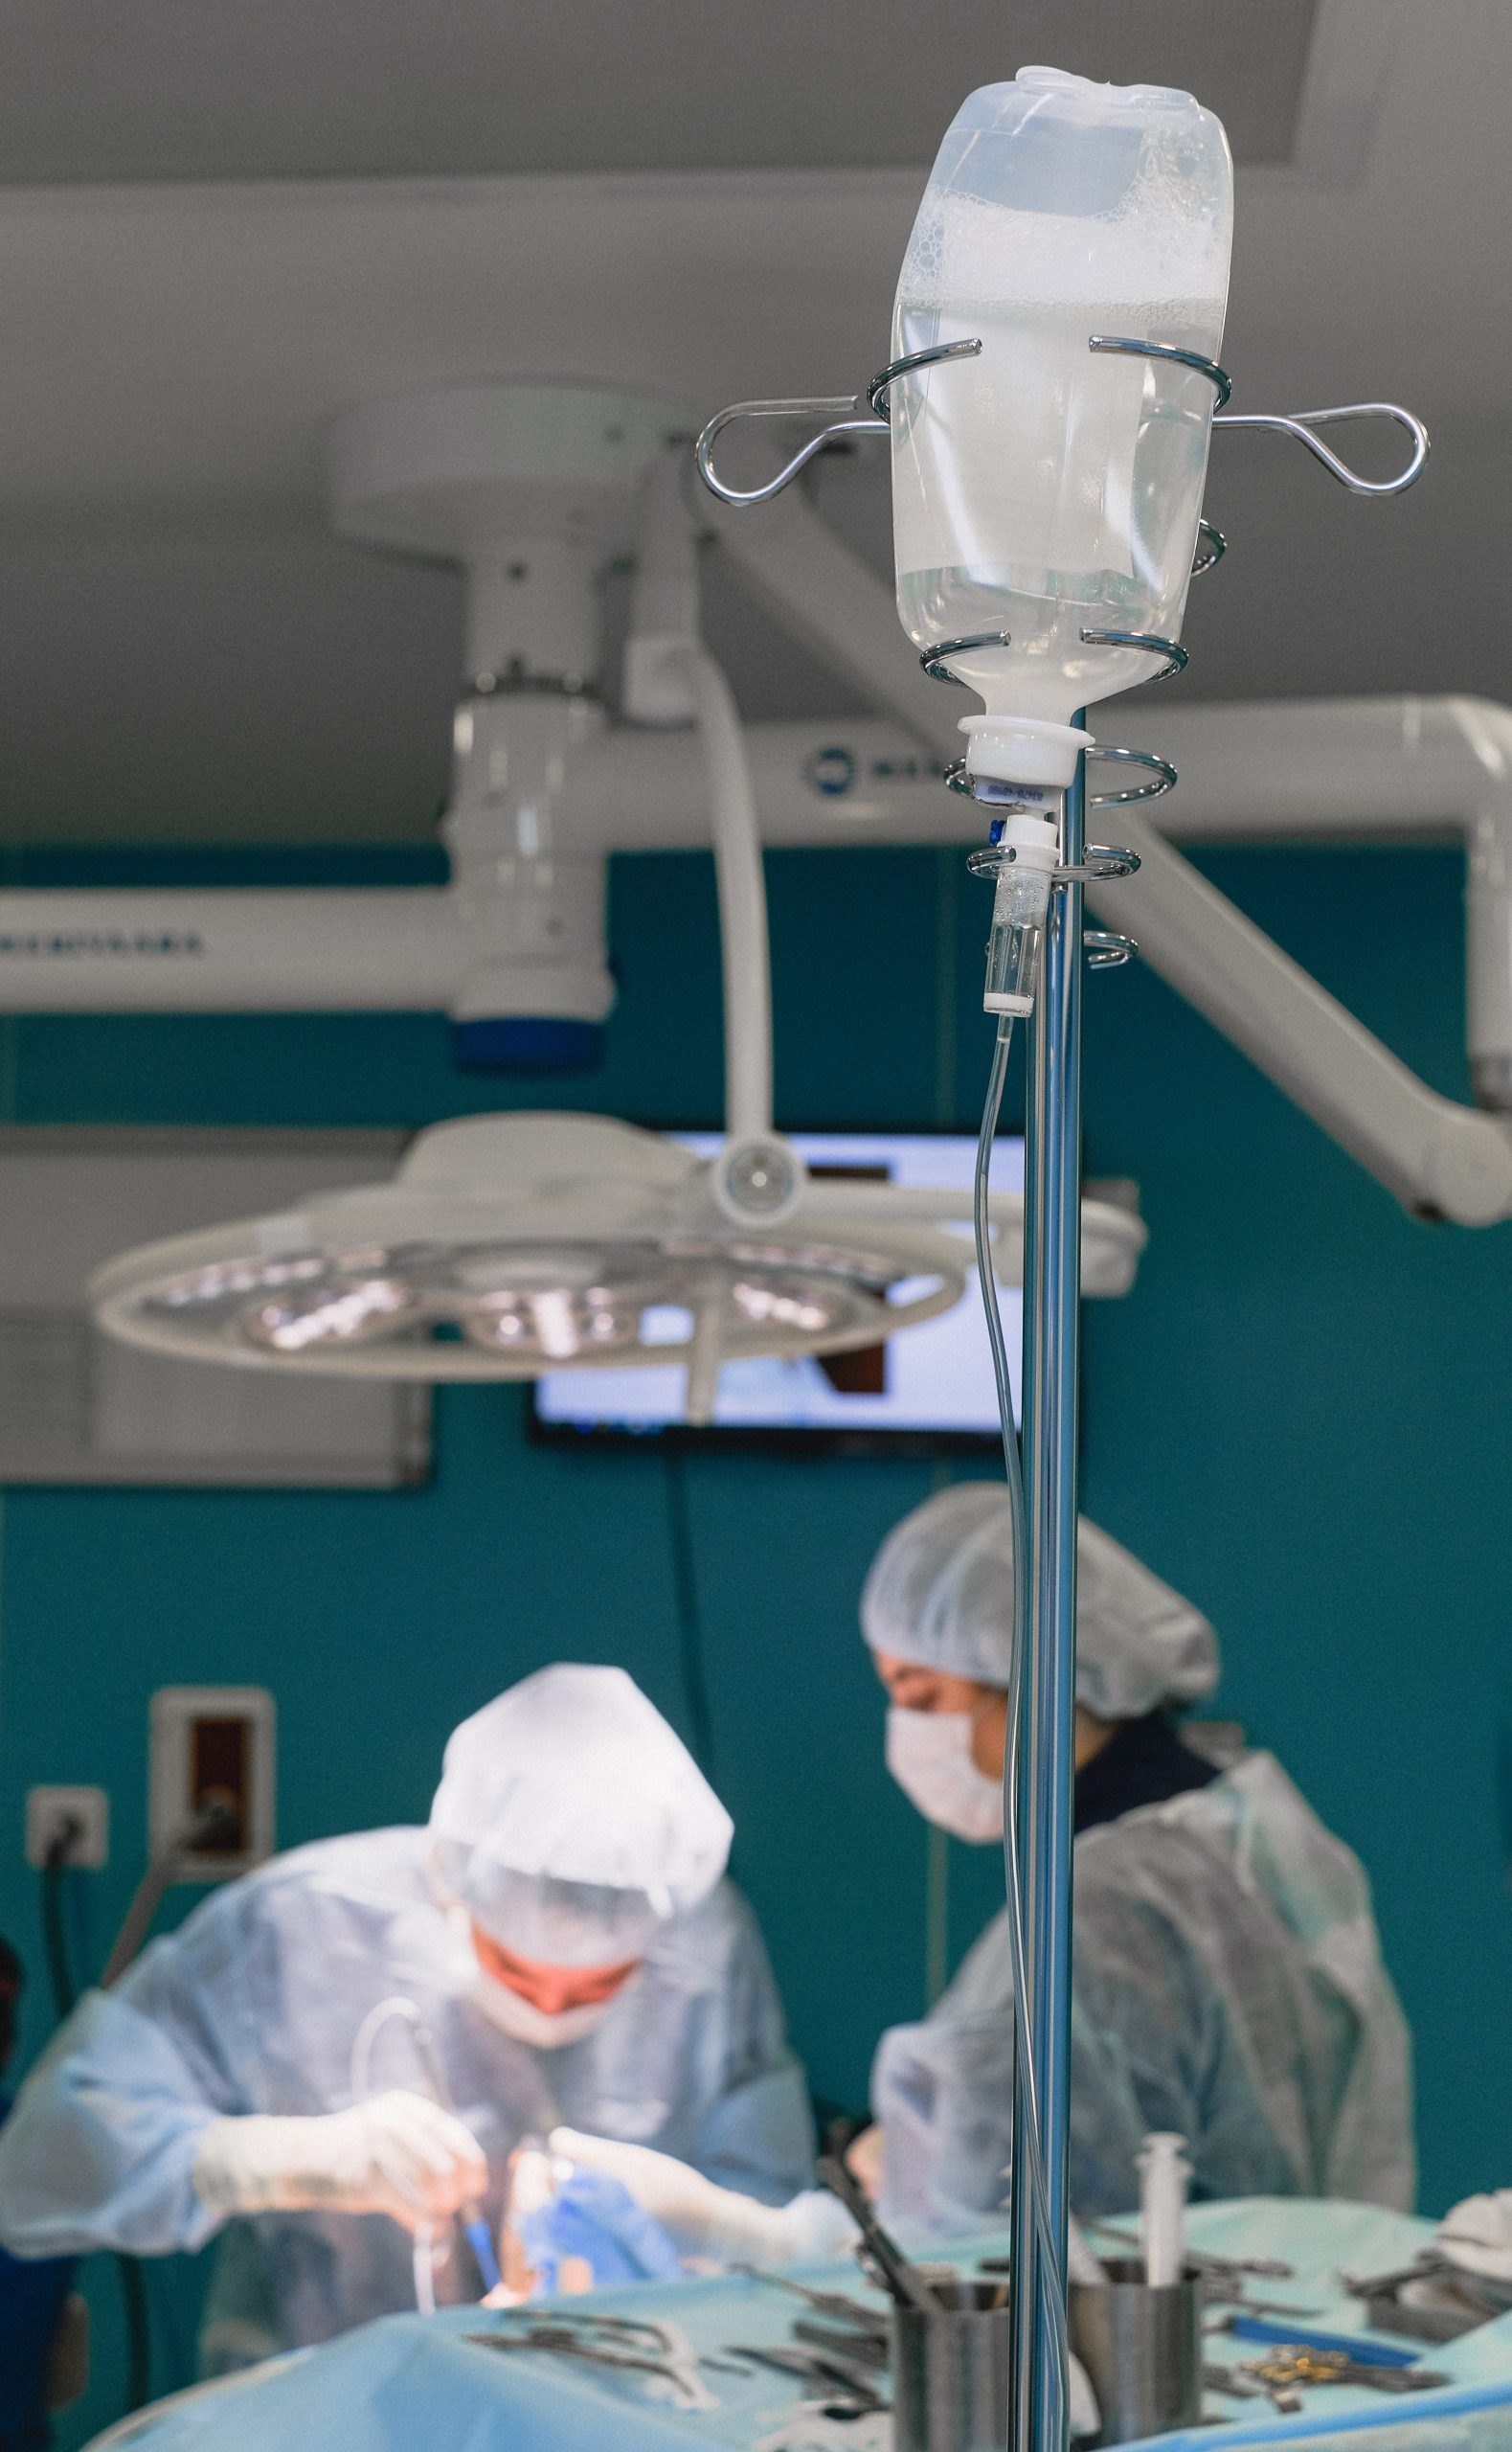 Aumenta tu Confianza con los Tratamientos de Cirugía Estética Recomendados por la Sociedad Española de Cirugía Plástica